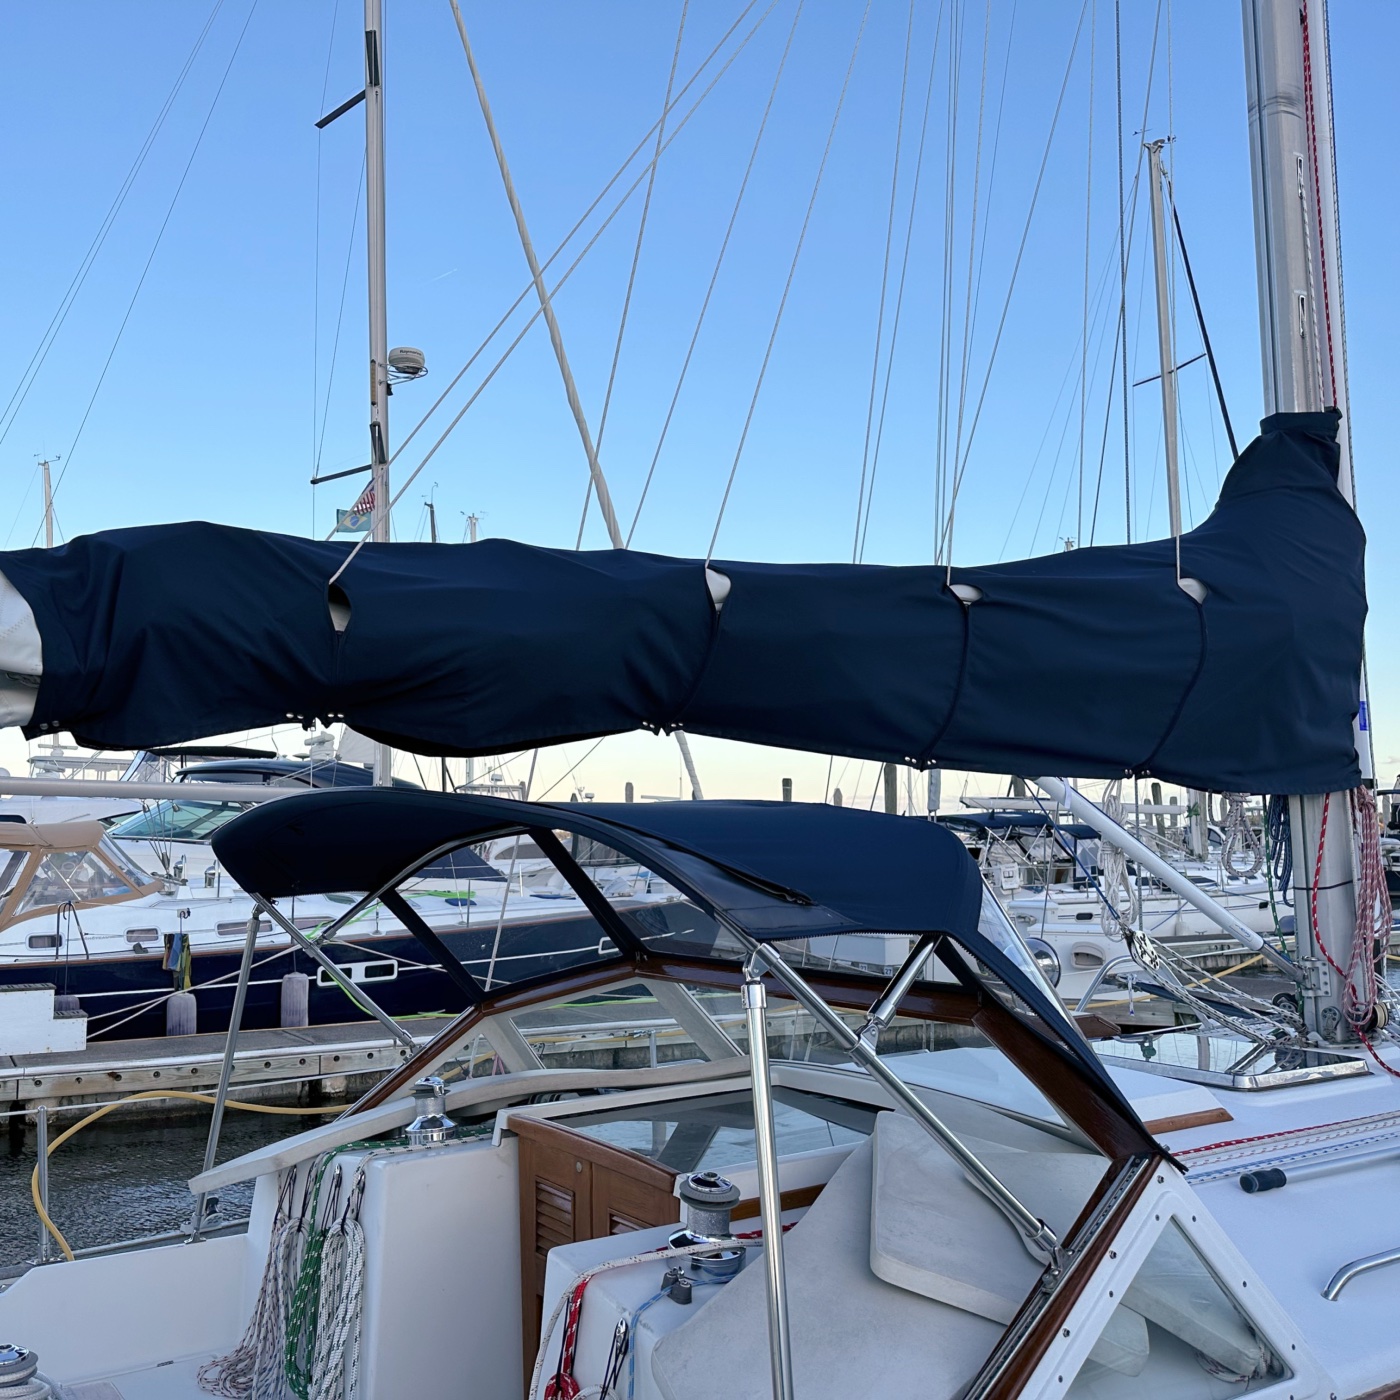 A sail cover around a mainsail